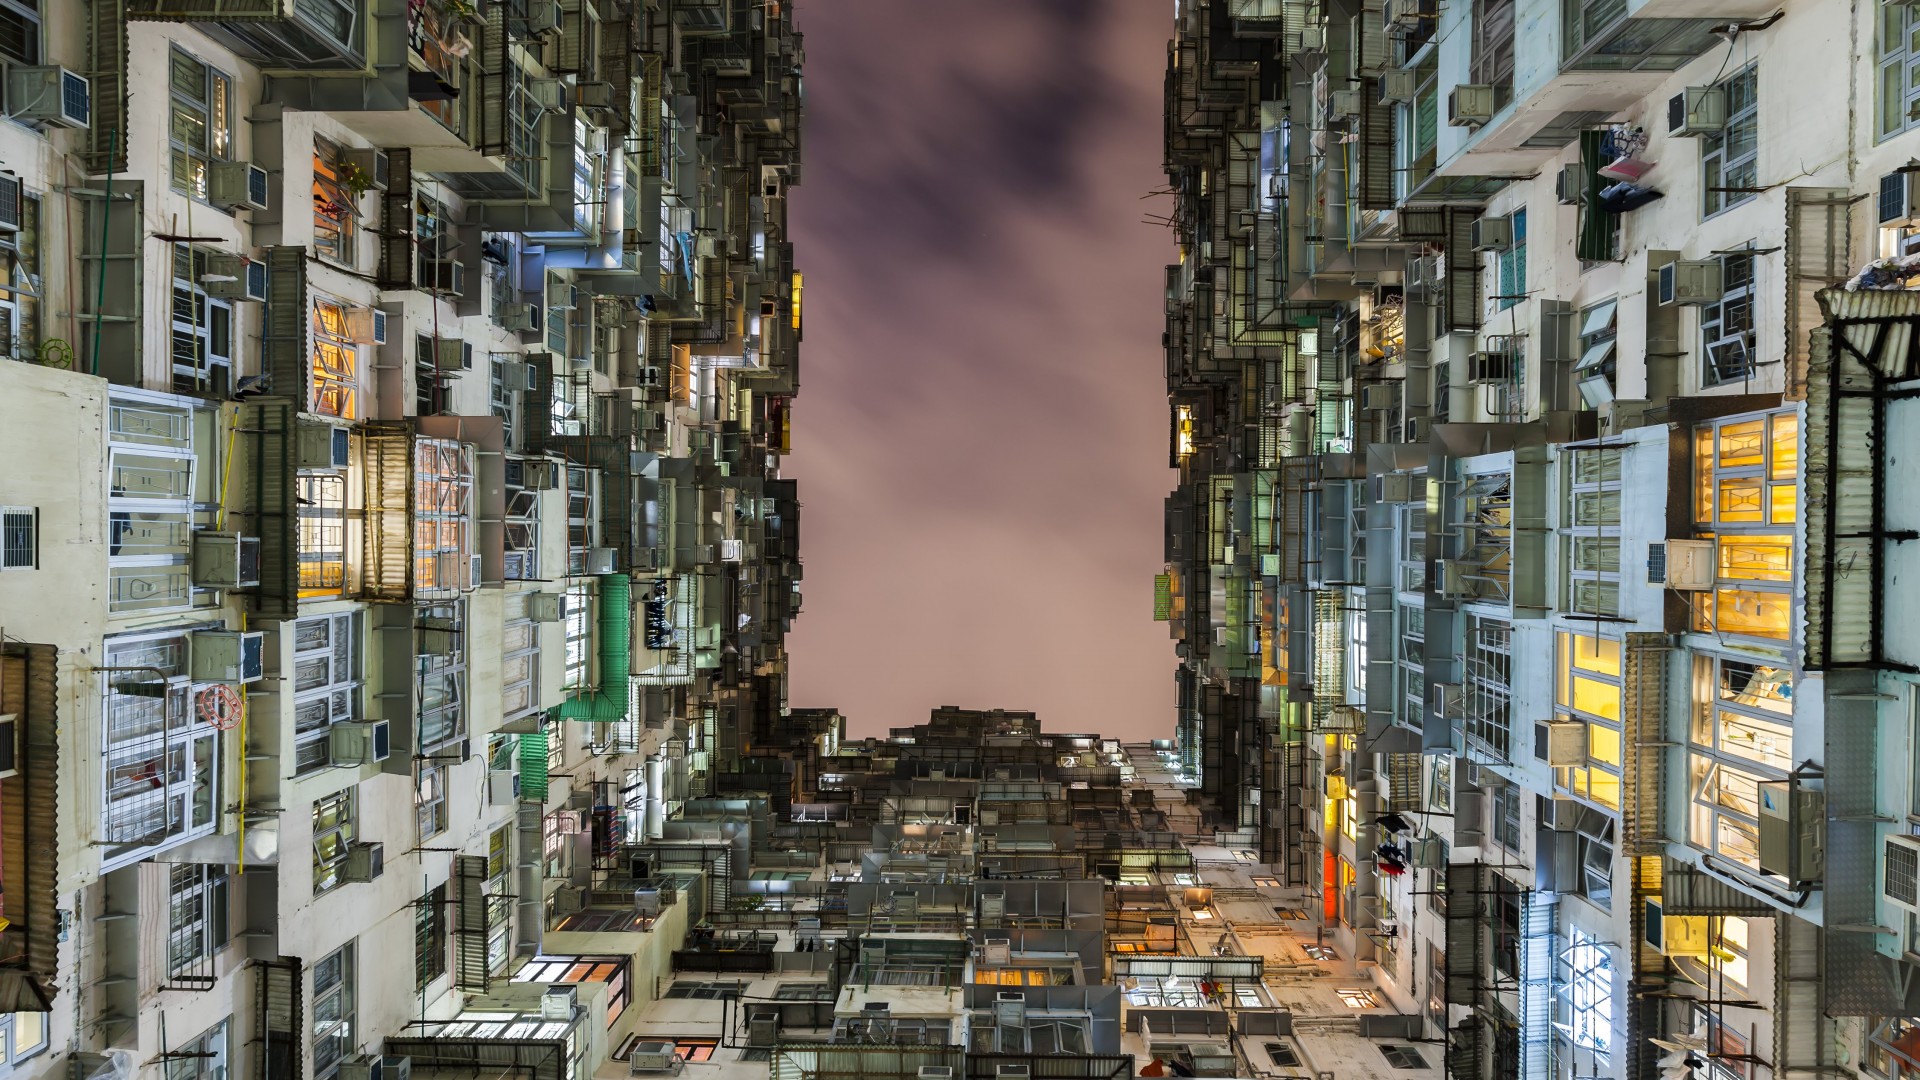 National Geographics, Living in a Box, Apartment, units, Hong Kong (horizontal)